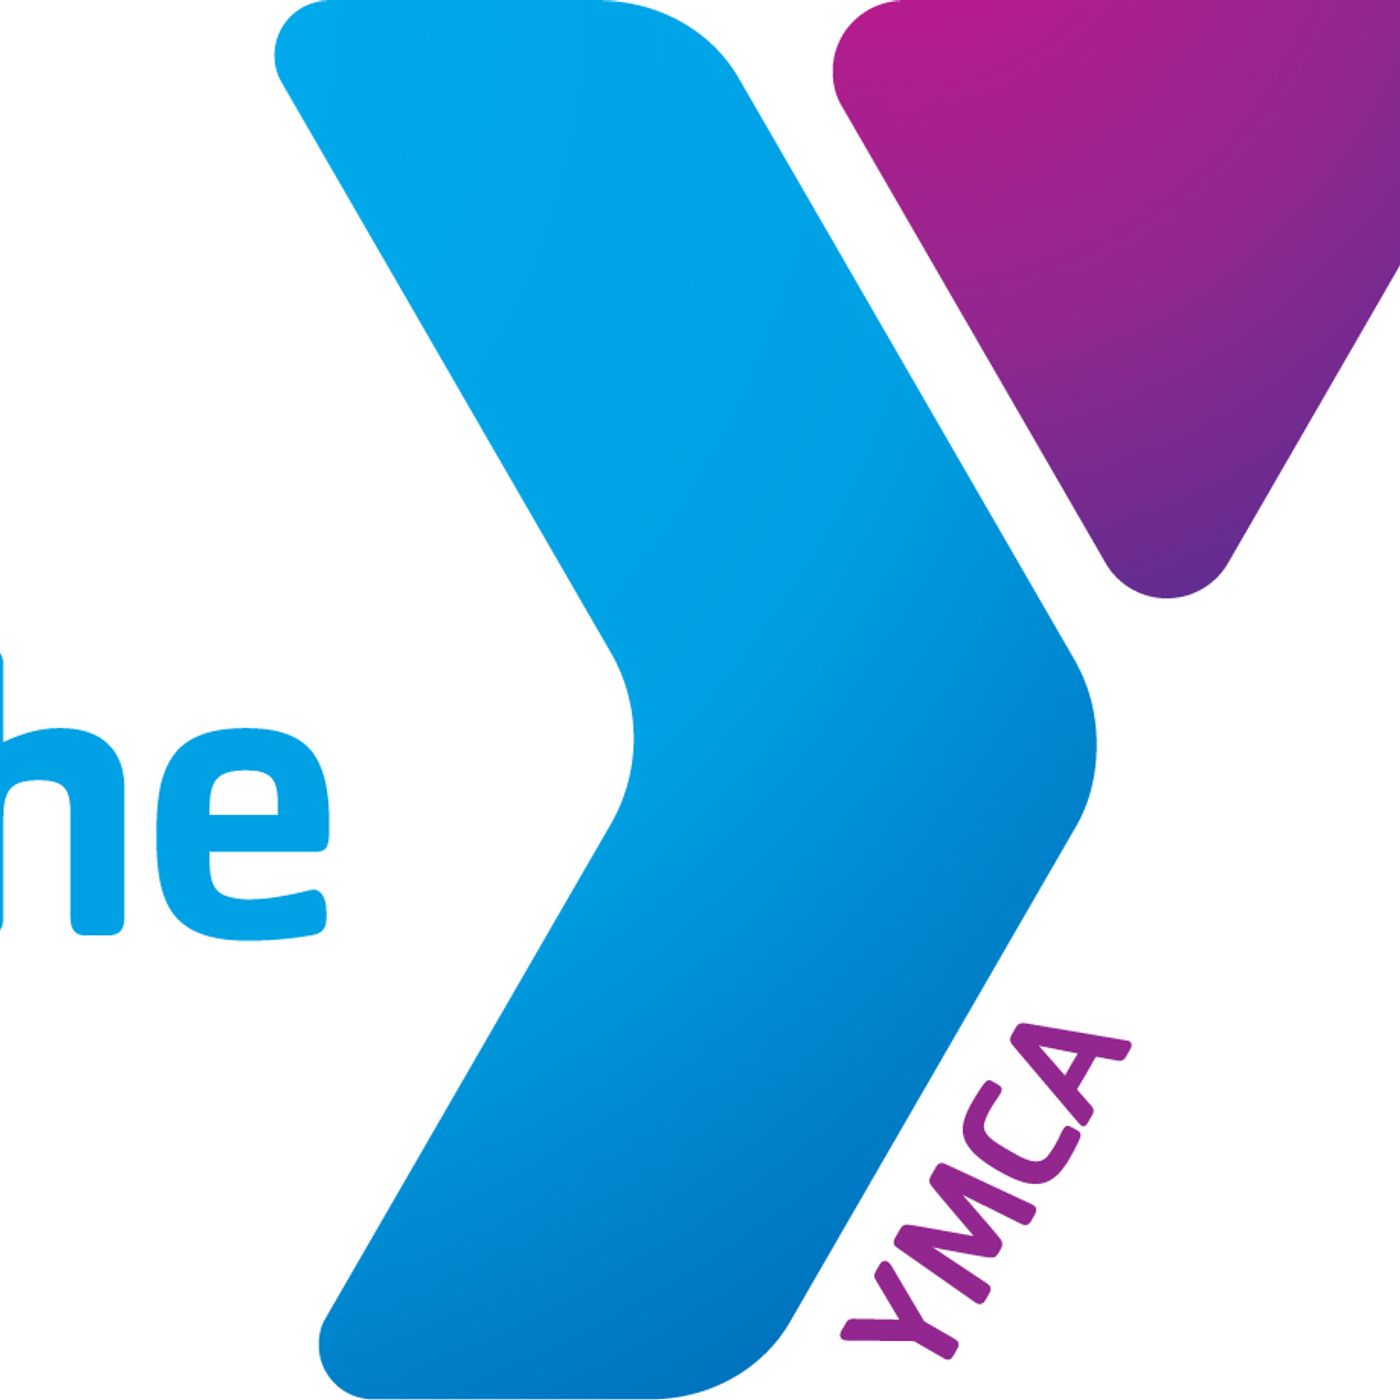 YMCA Podcast July 2021 - Aquatics